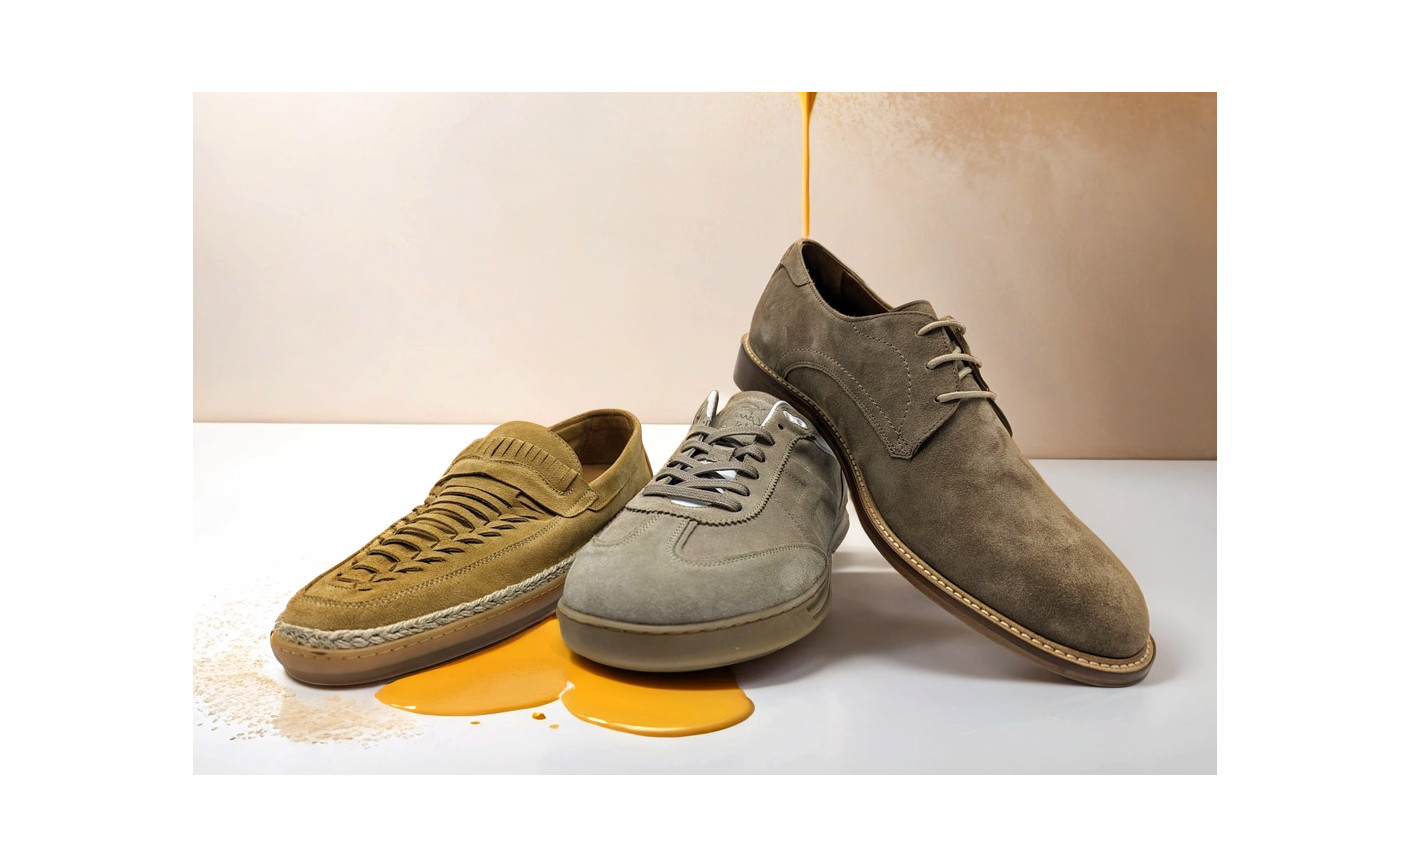 Expo Riva Schuh & Gardabags : Sojor présente sa nouvelle collection de chaussures